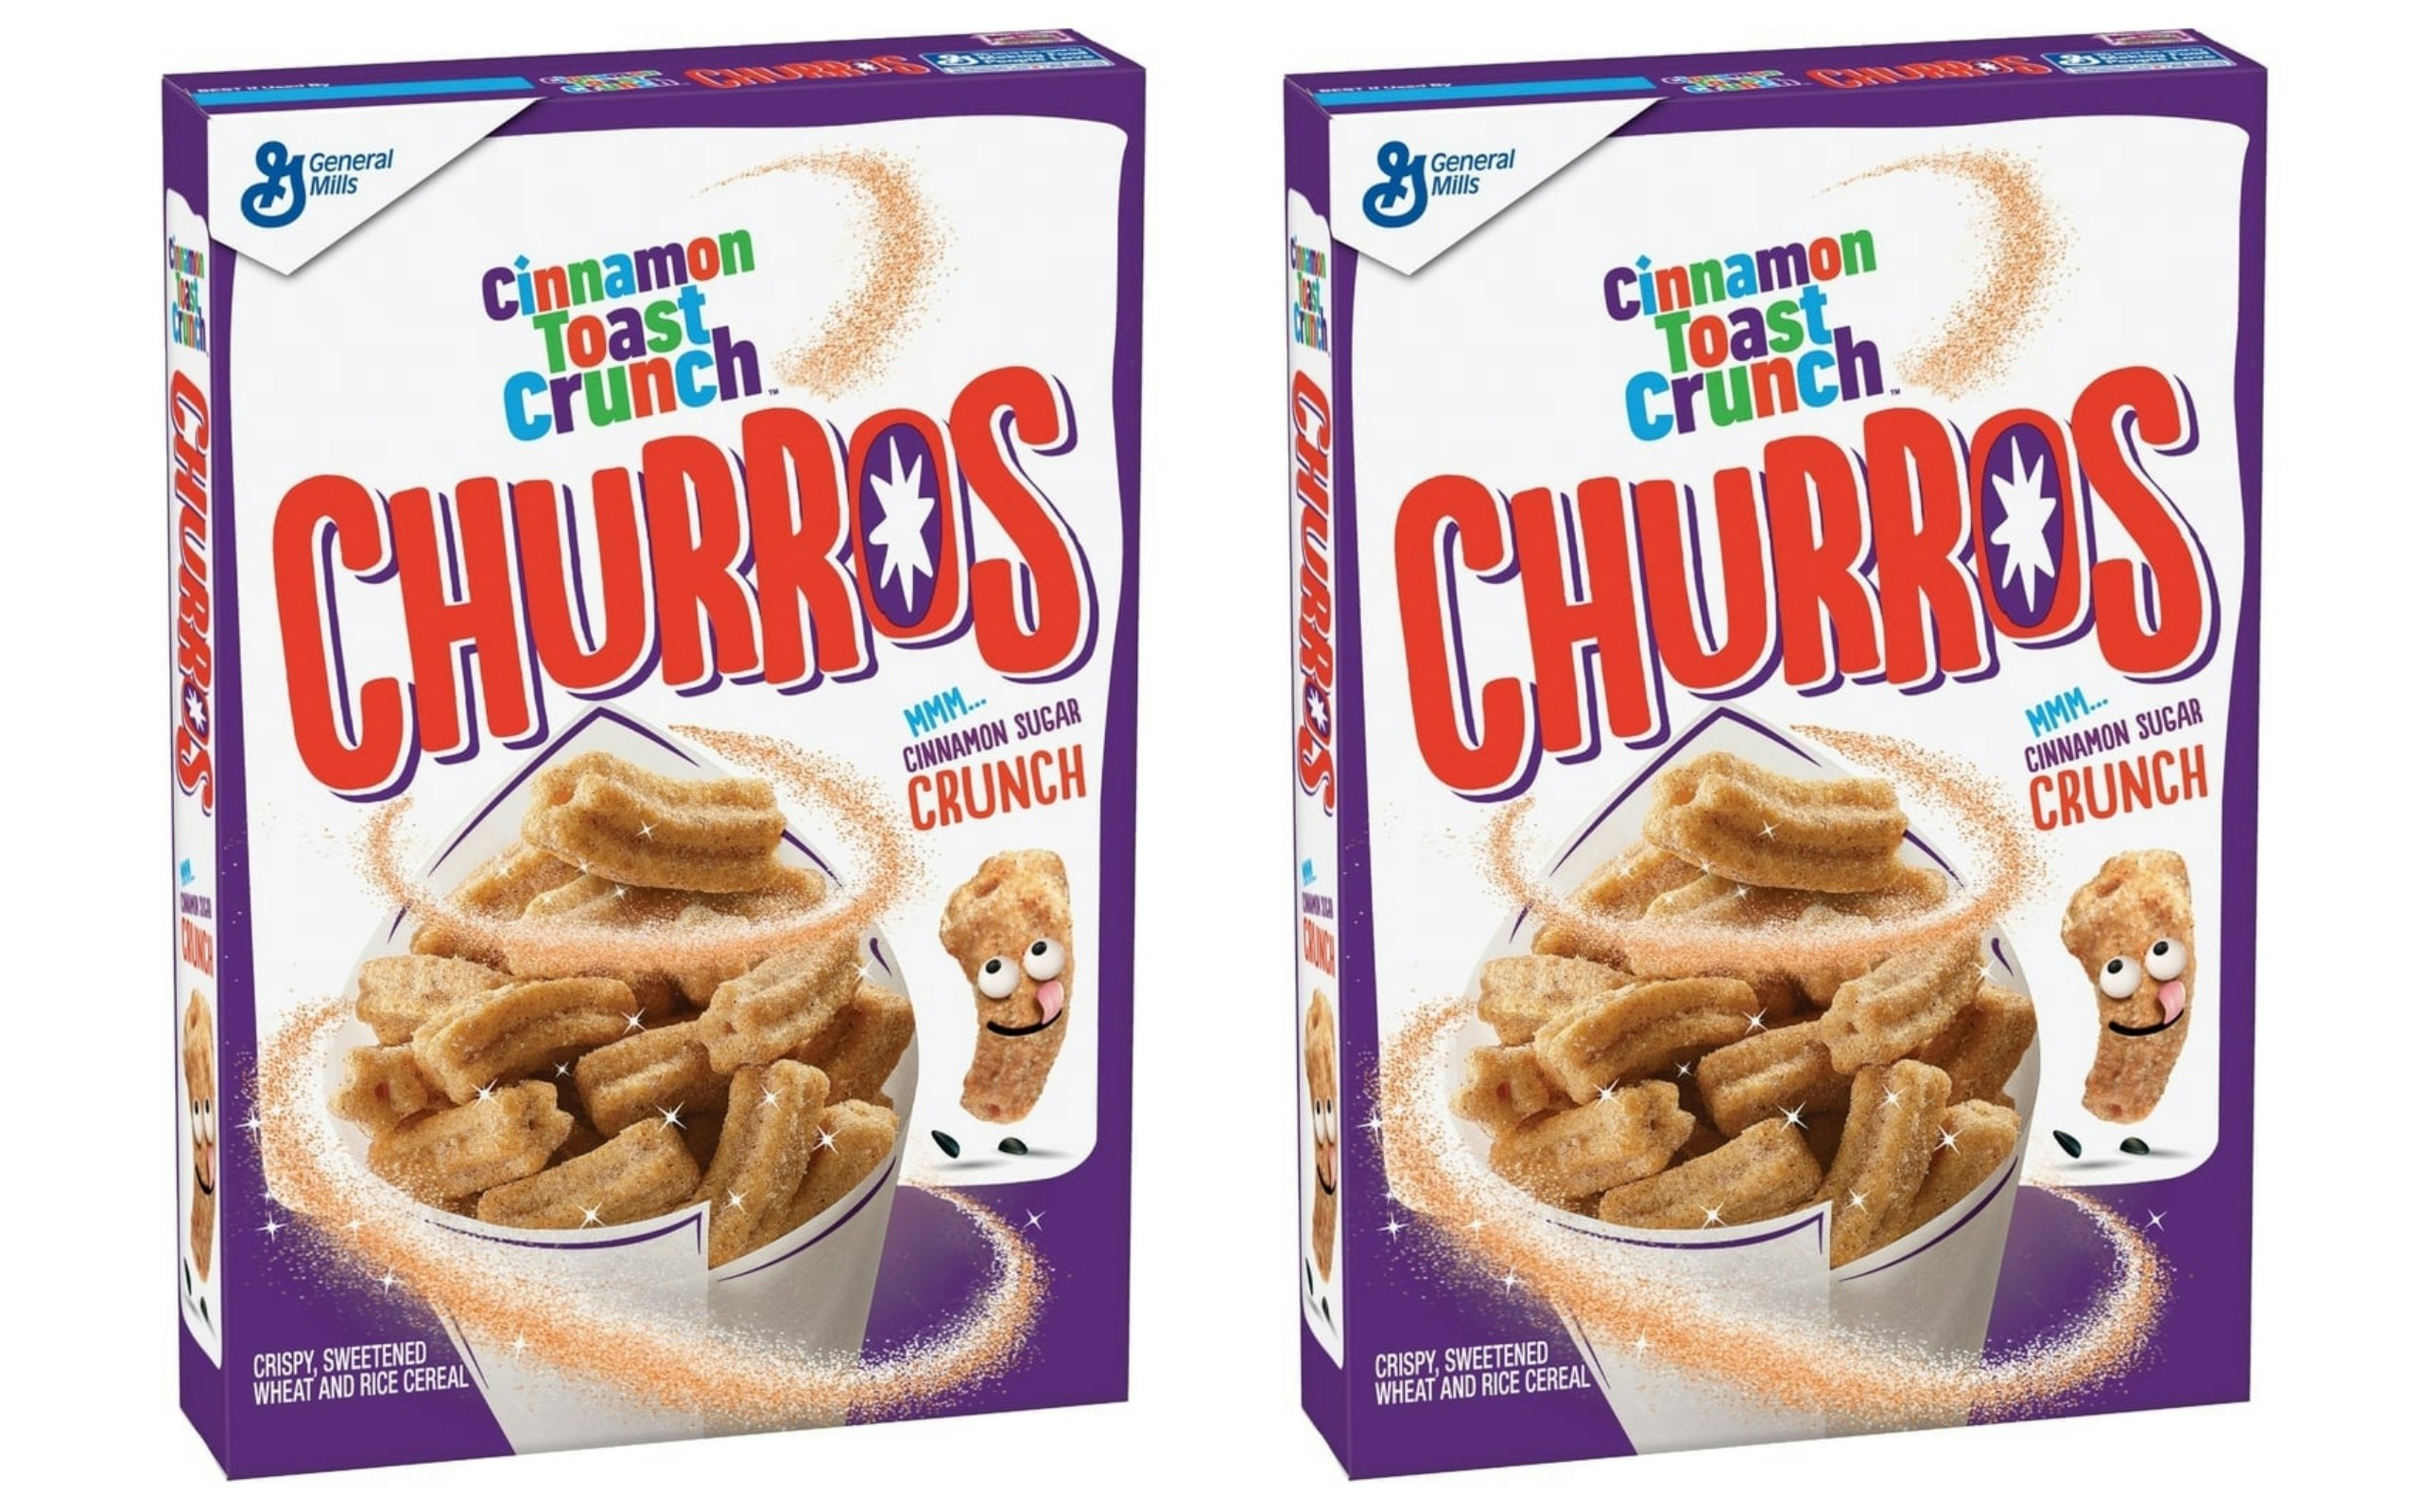 captain crunch churros